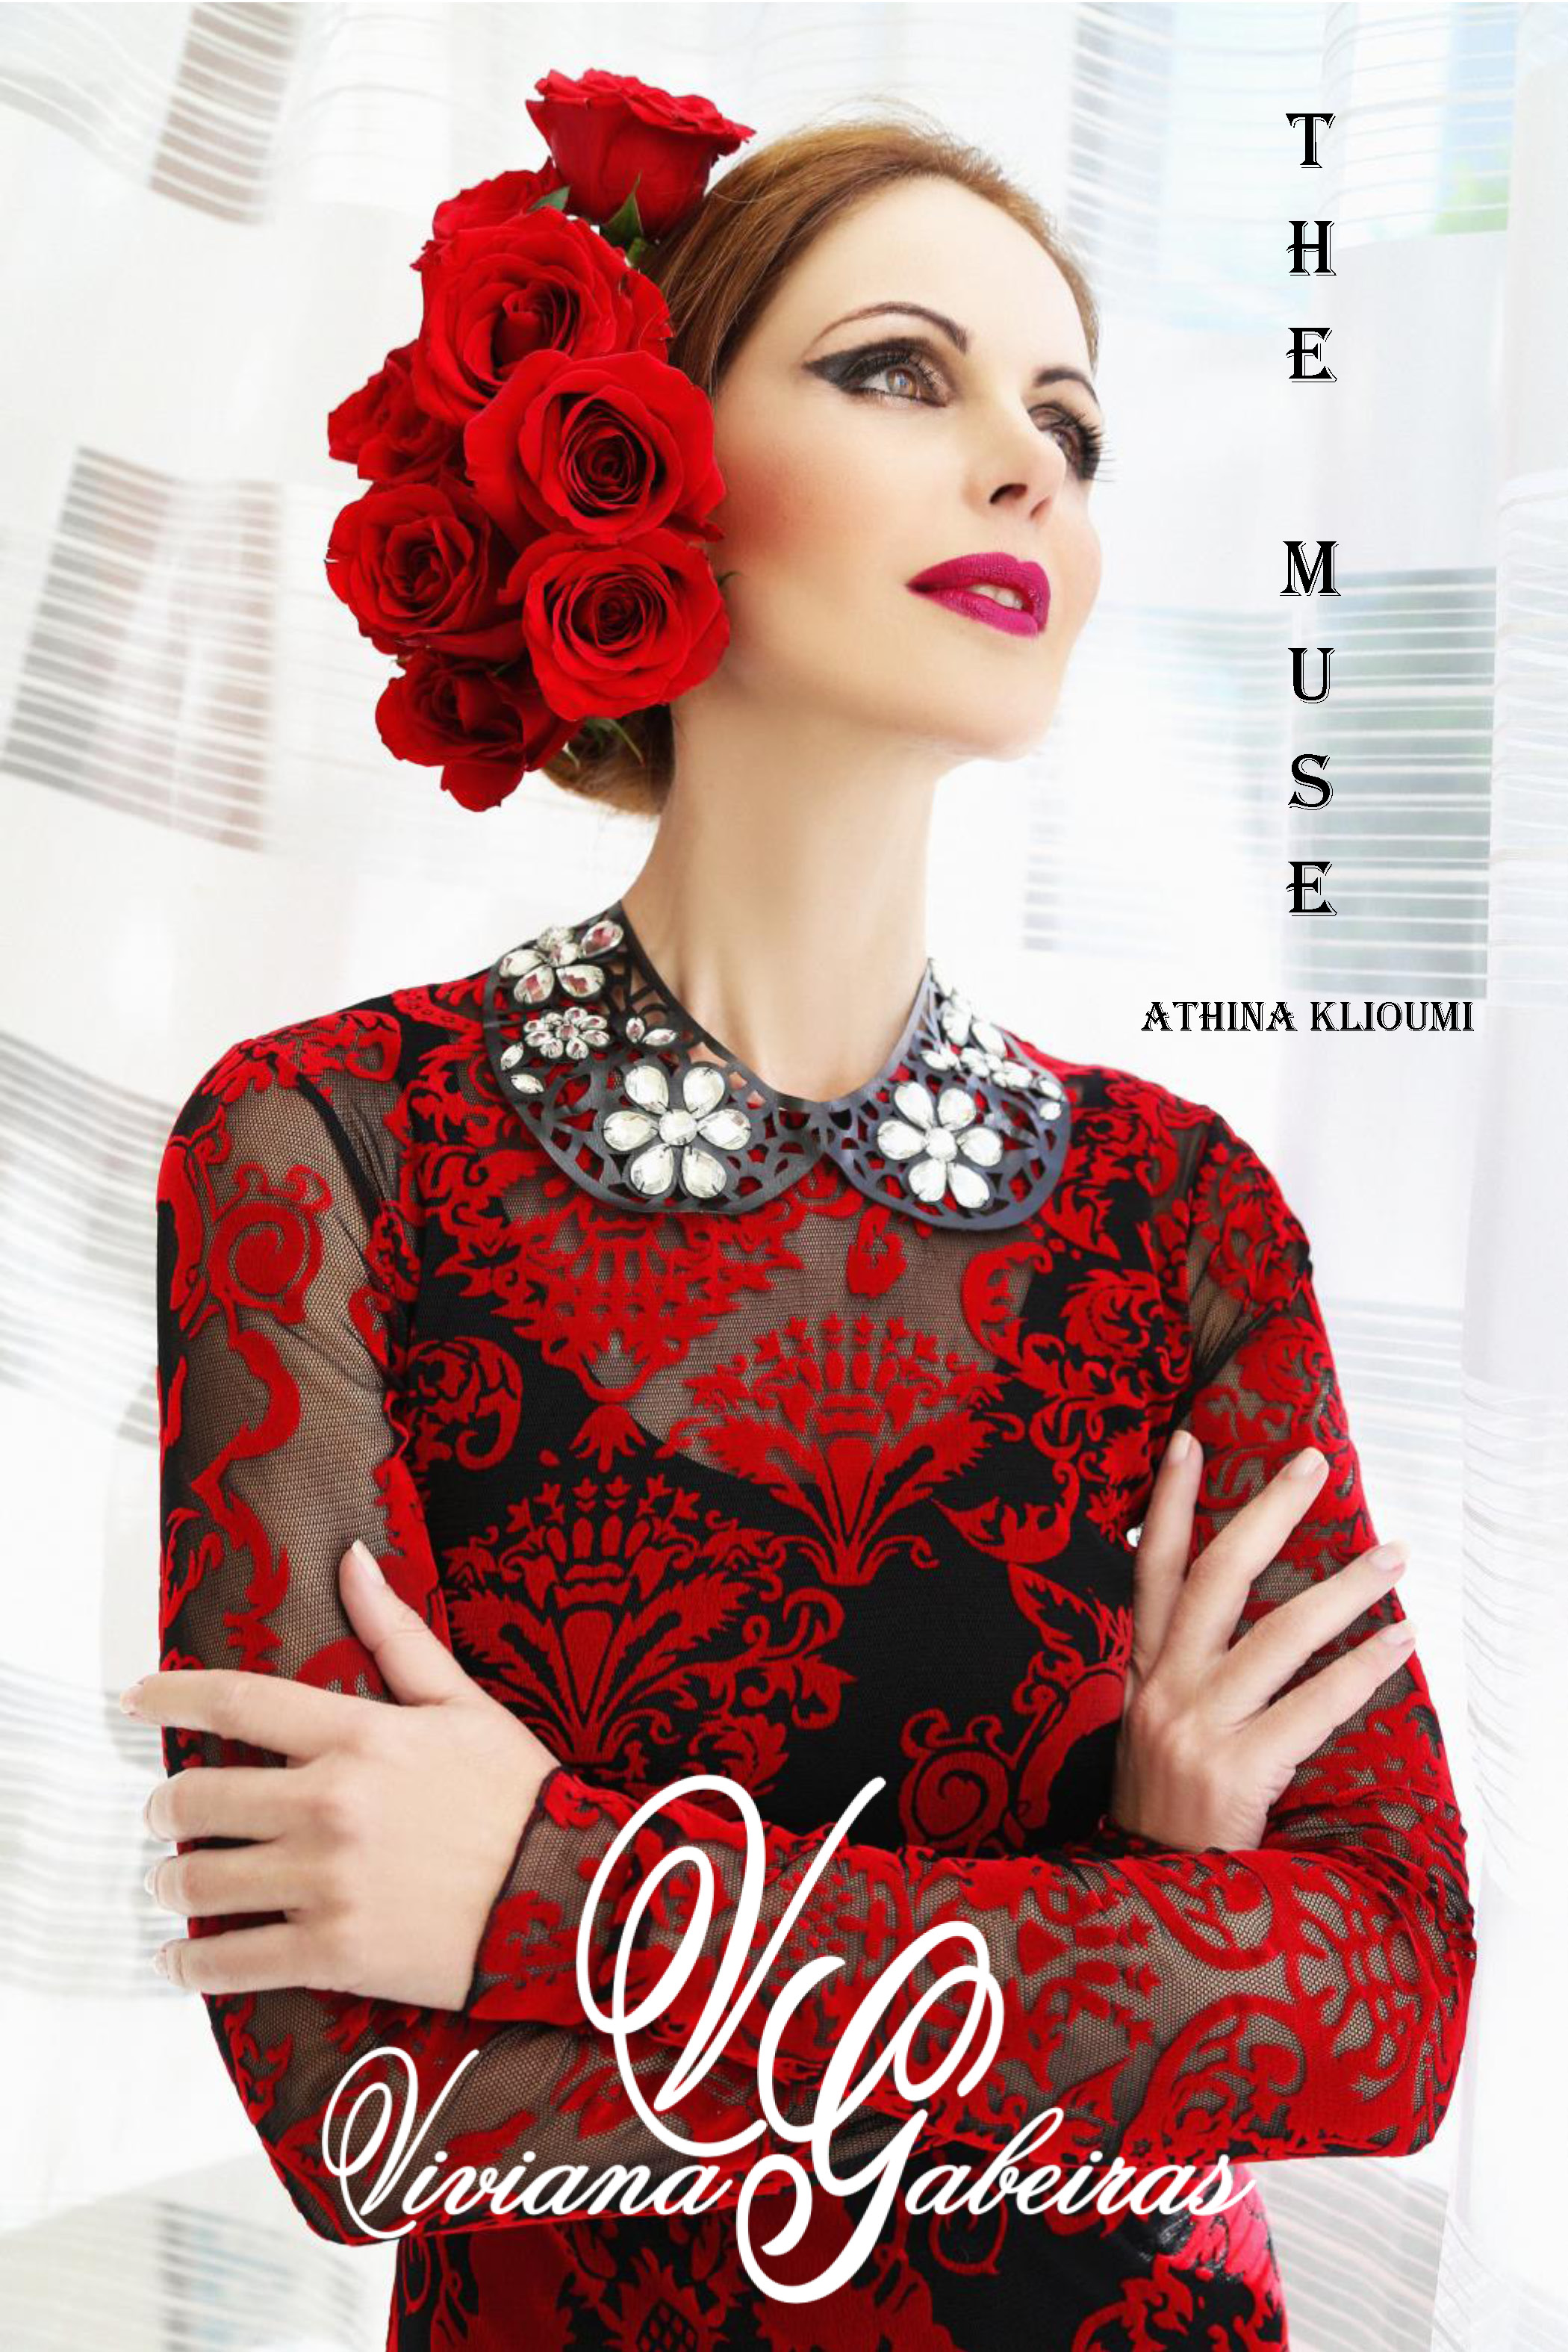 New look book for designer Viviana Gabeiras